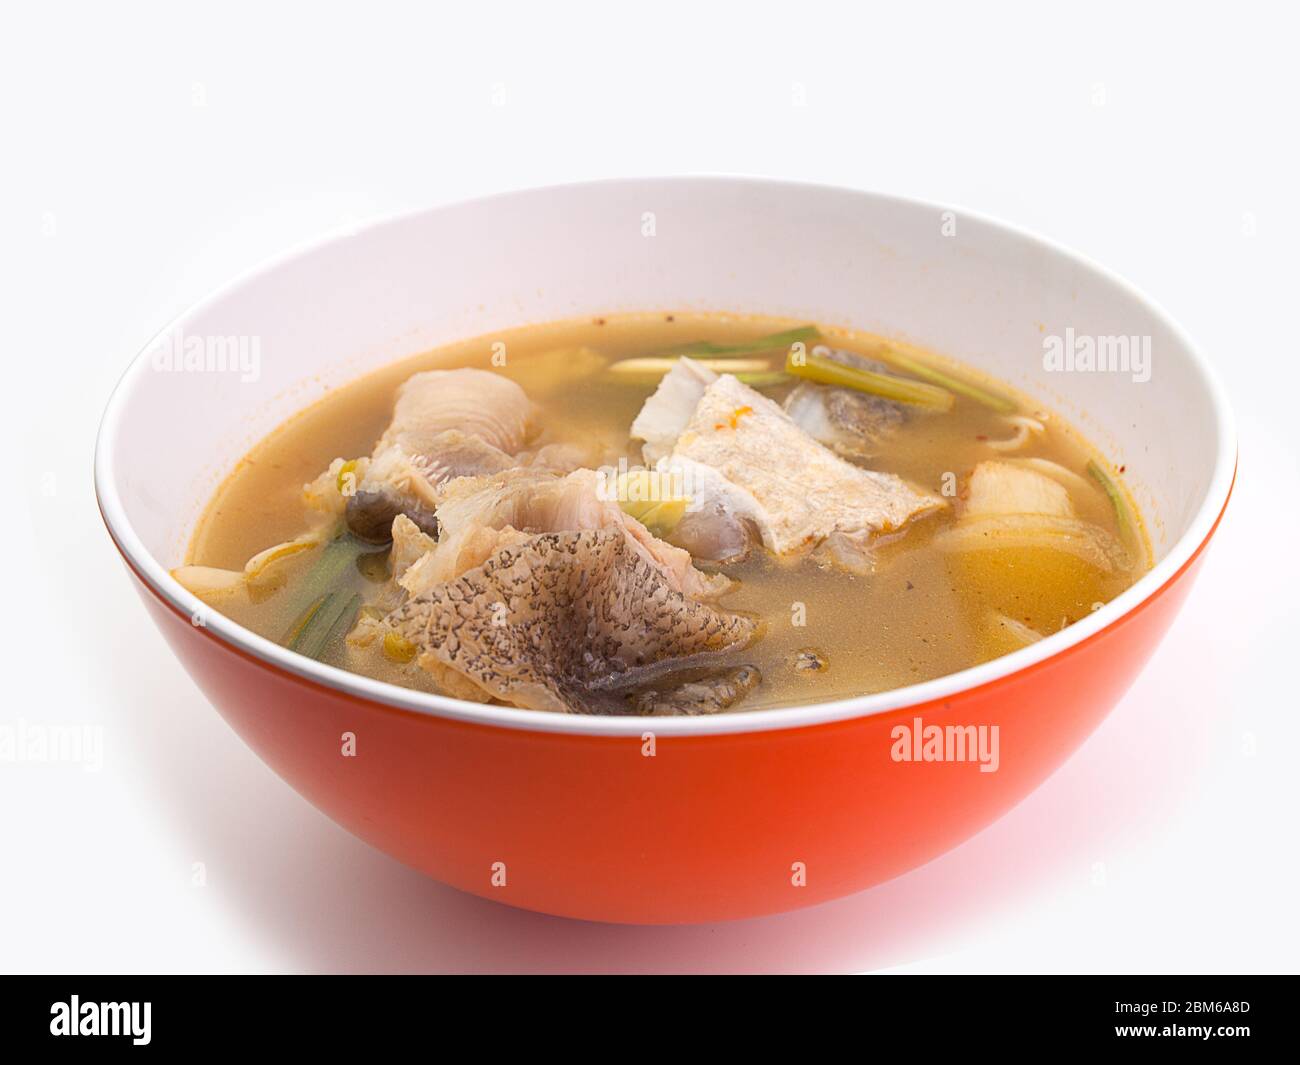 Soupe de poisson épicée, soupe chaude, Tom yum, nourriture à faible teneur en calories Banque D'Images